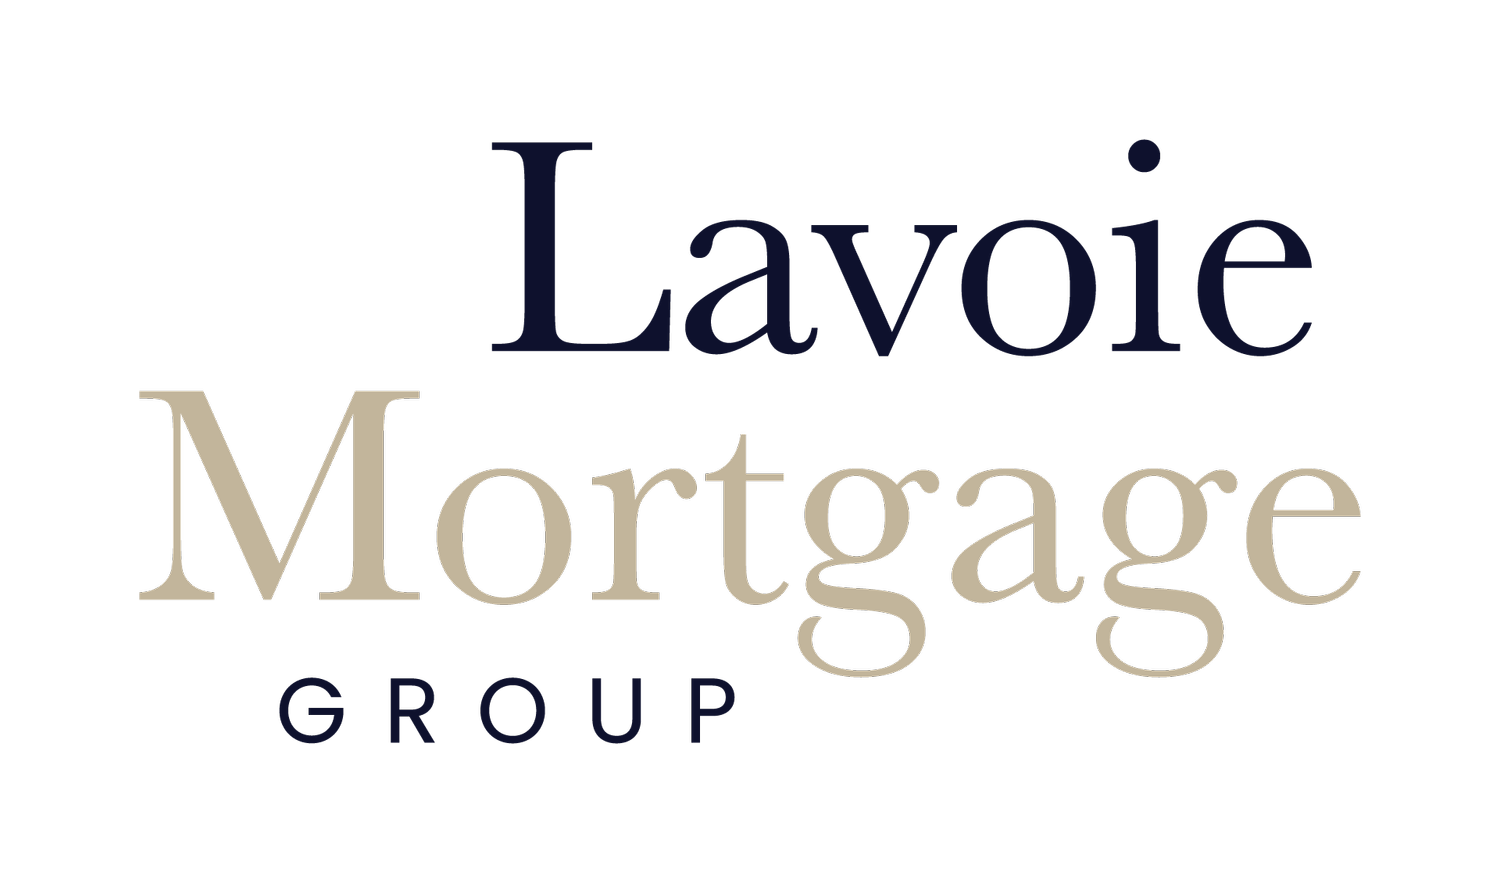 Jessie Lavoie Mortgages